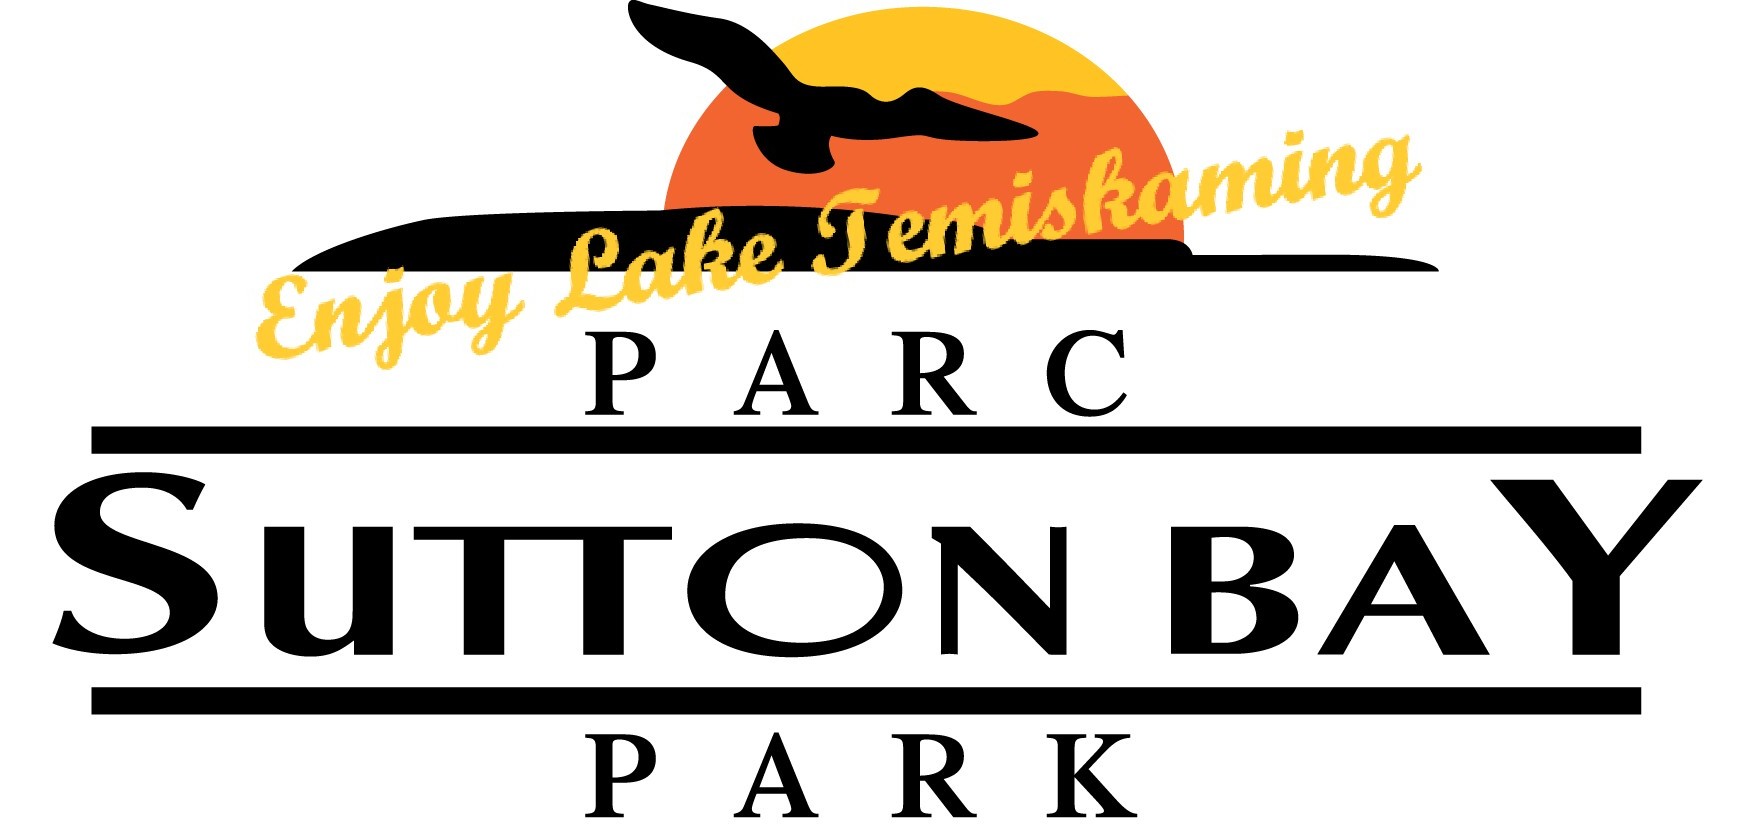 Parc Sutton Bay Park Inc.